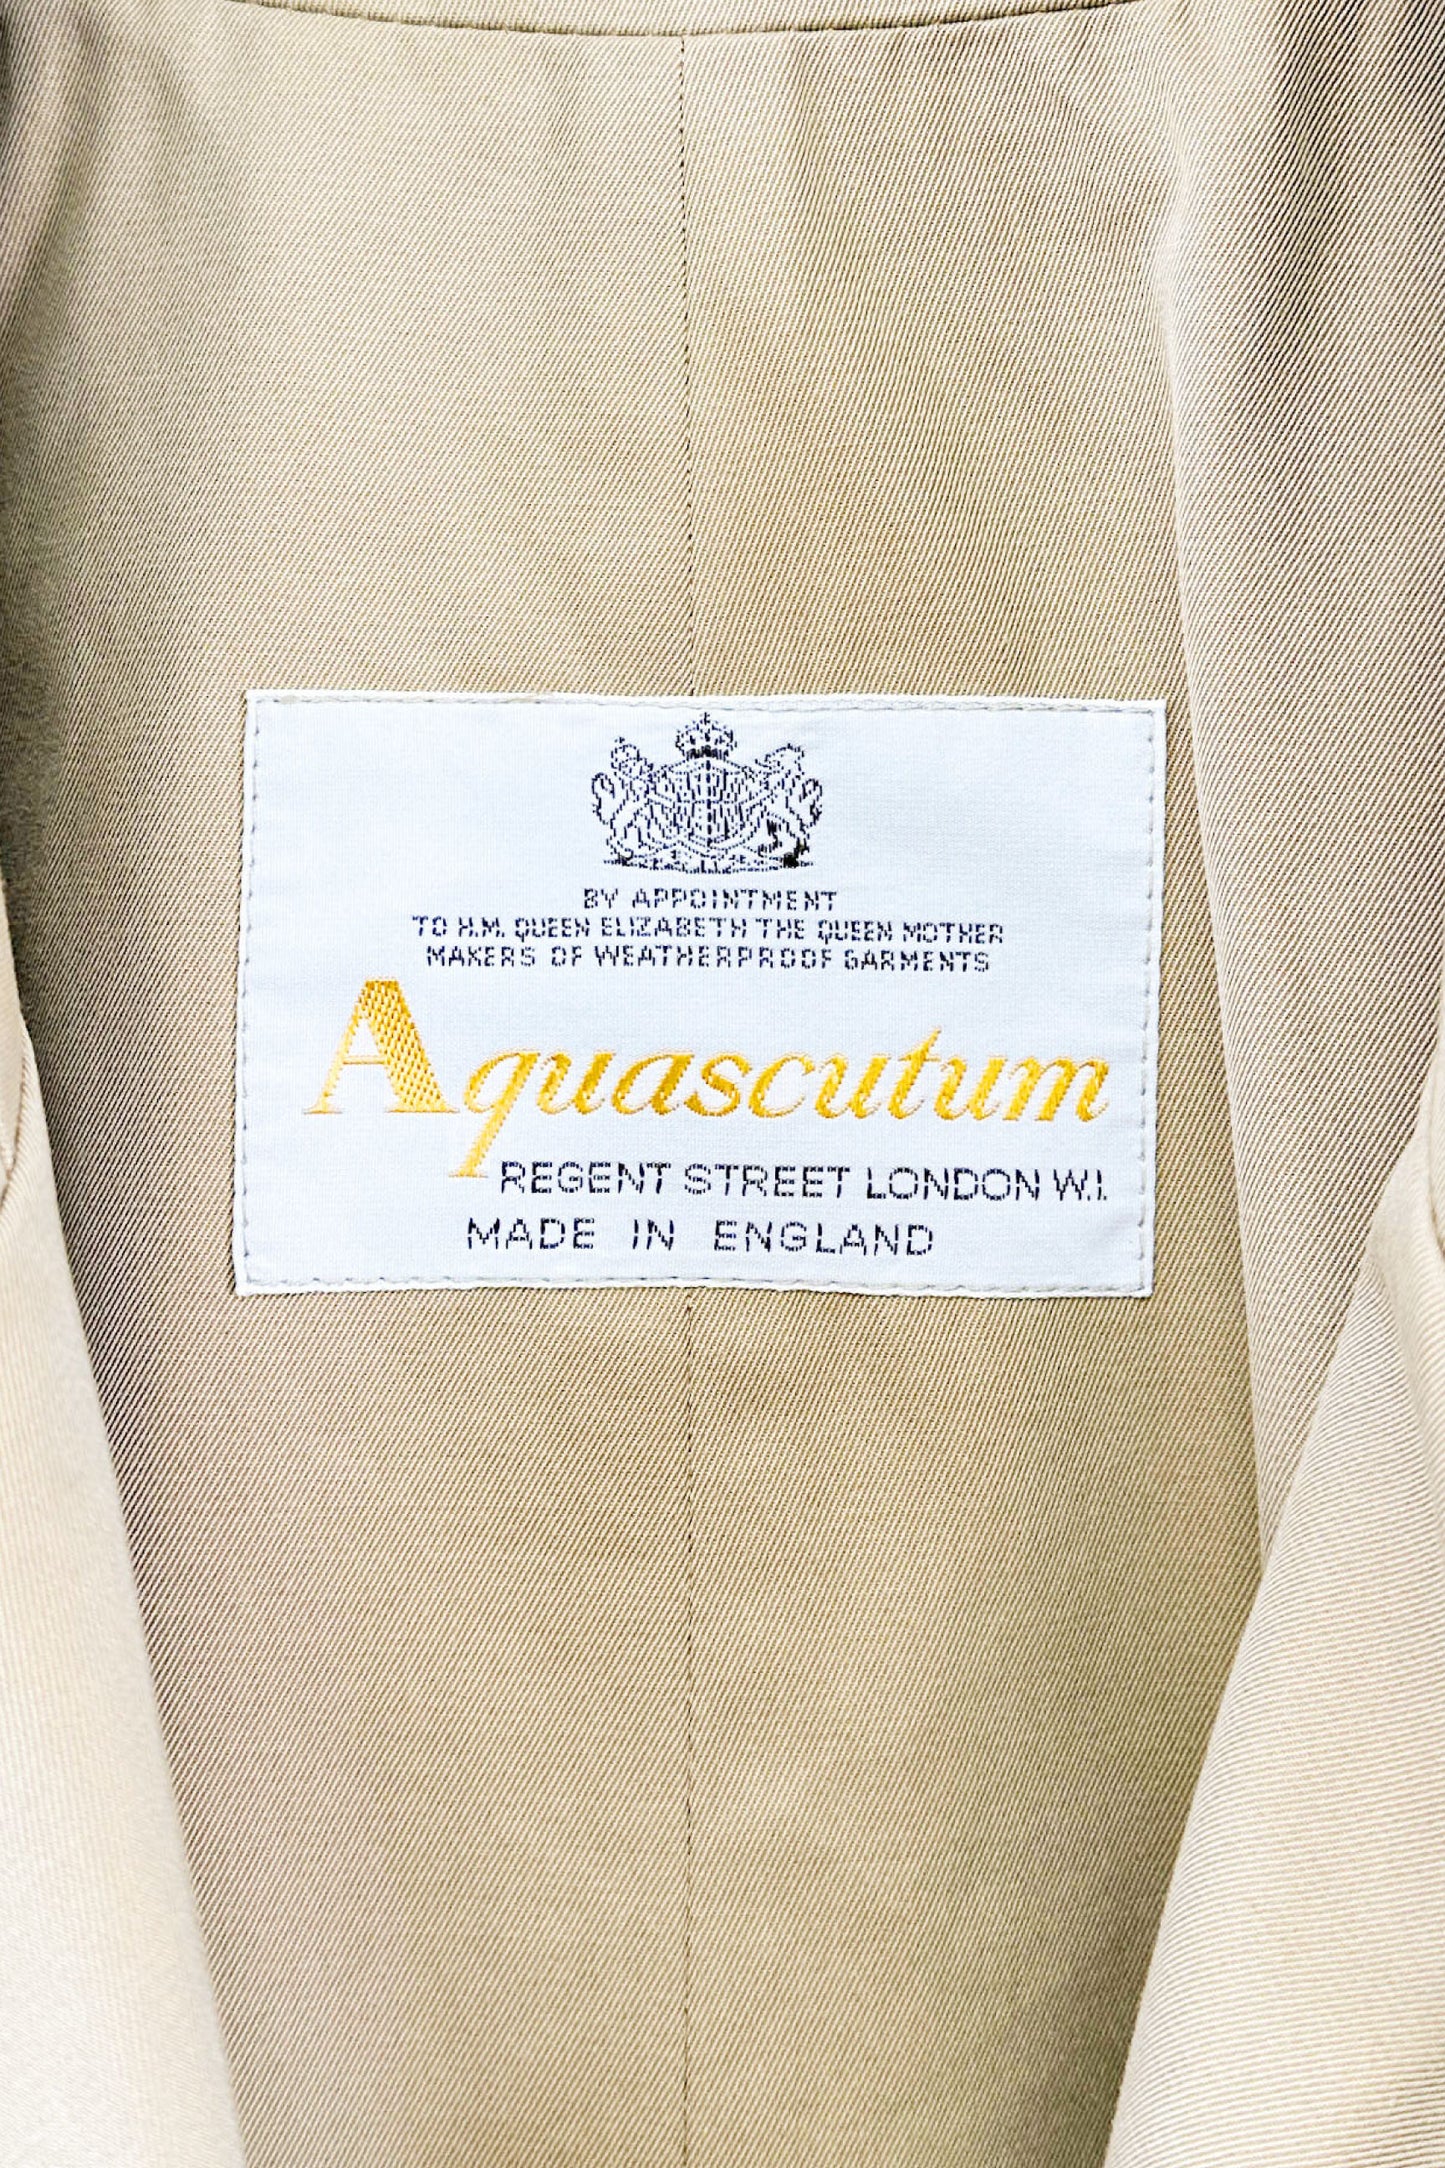 Made in ENGLAND Aquascutum coat